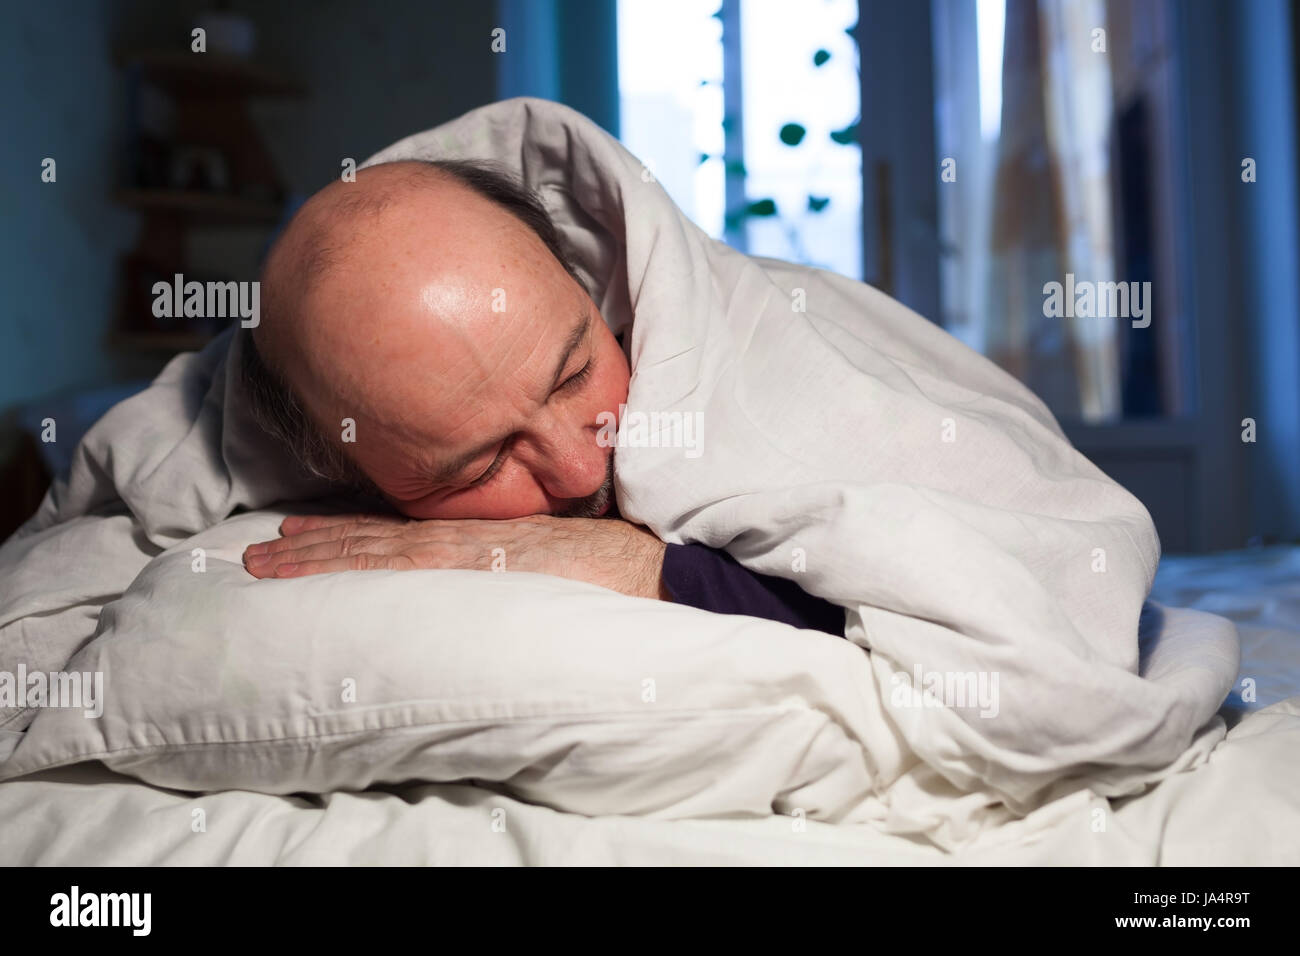 L'uomo anziano è addormentato veloce, ricoperto da una coltre bianca. Un sano sonno durante la notte Foto Stock